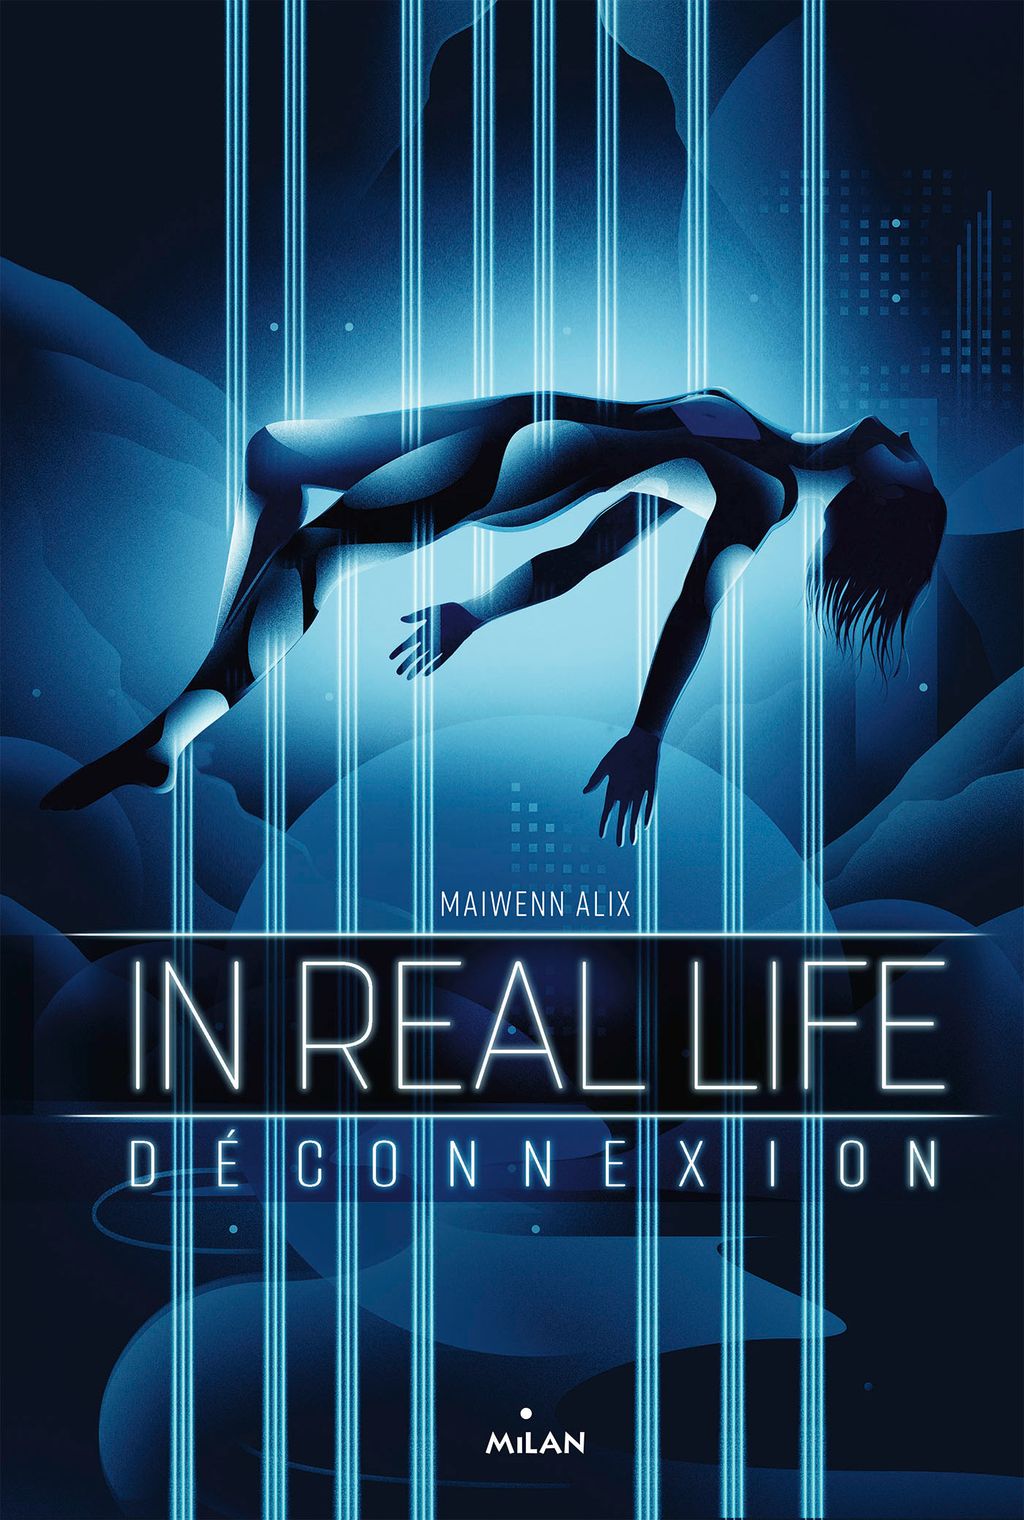 « Déconnexion » cover